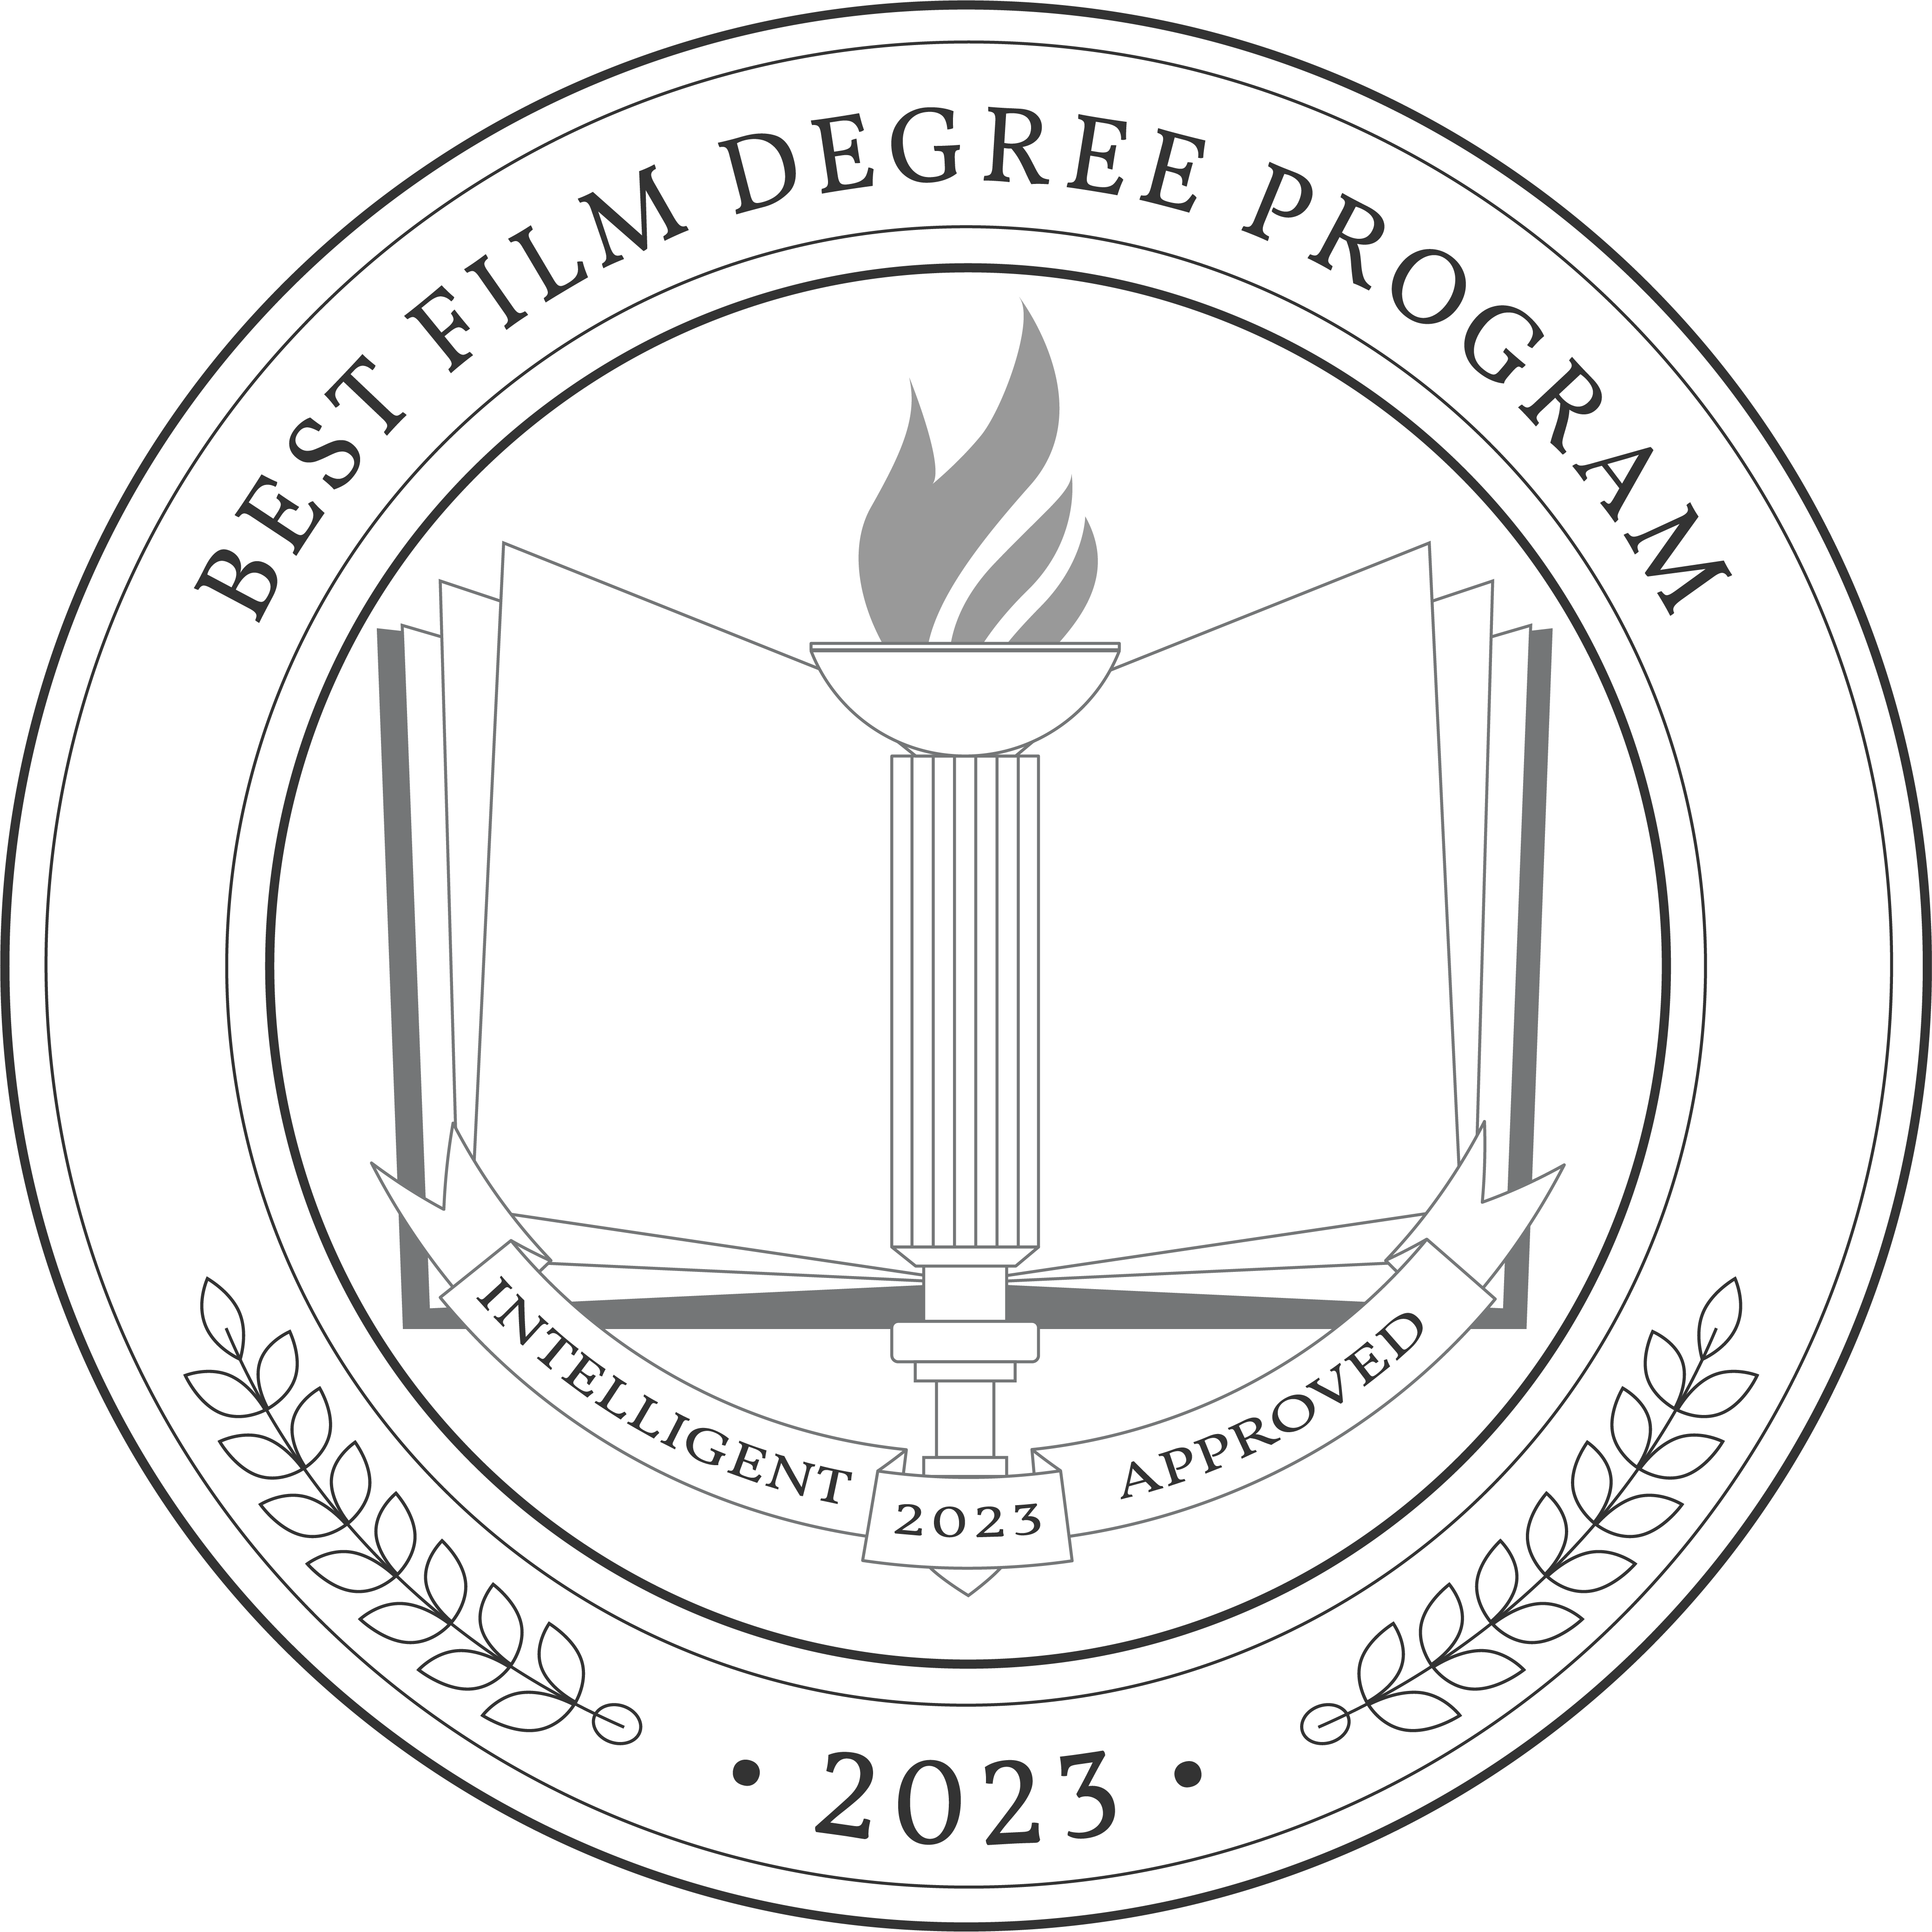 Best Film Degree Program 2023